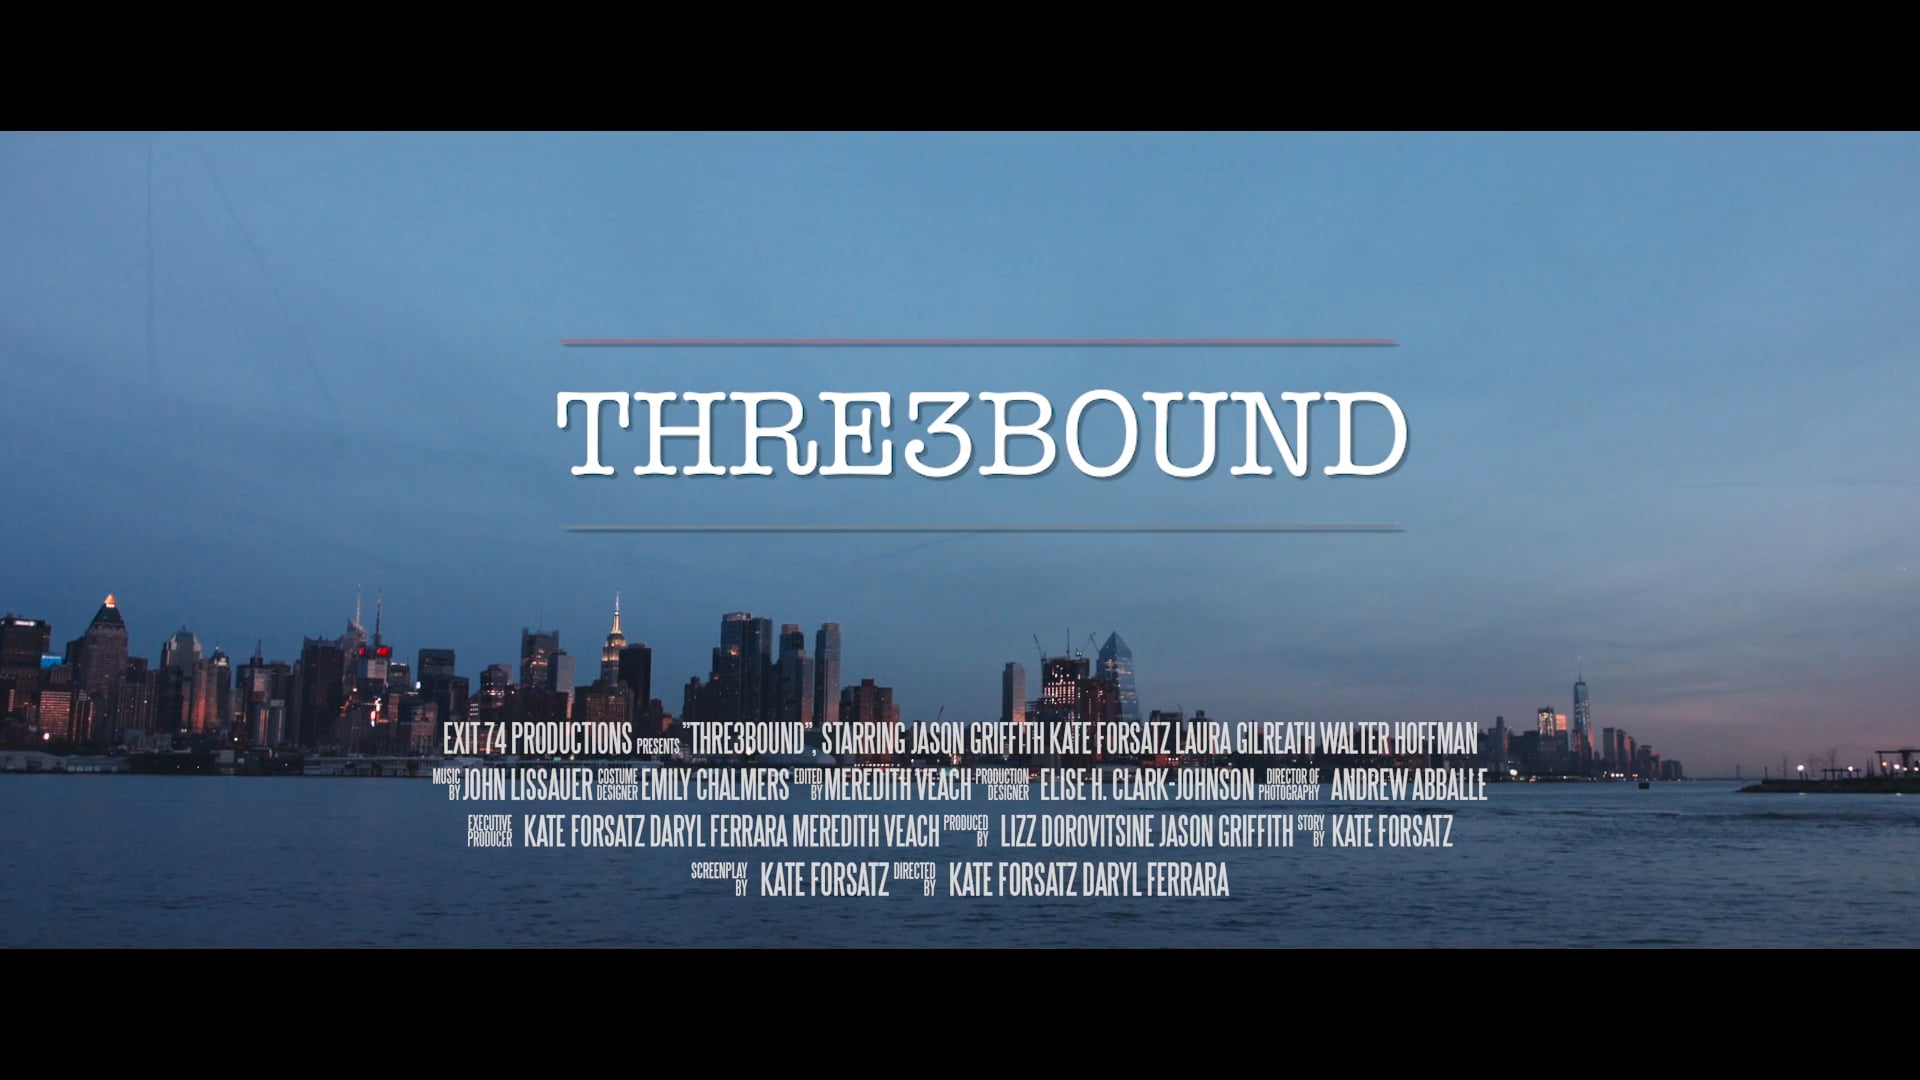 THRE3BOUND Trailer (2019)